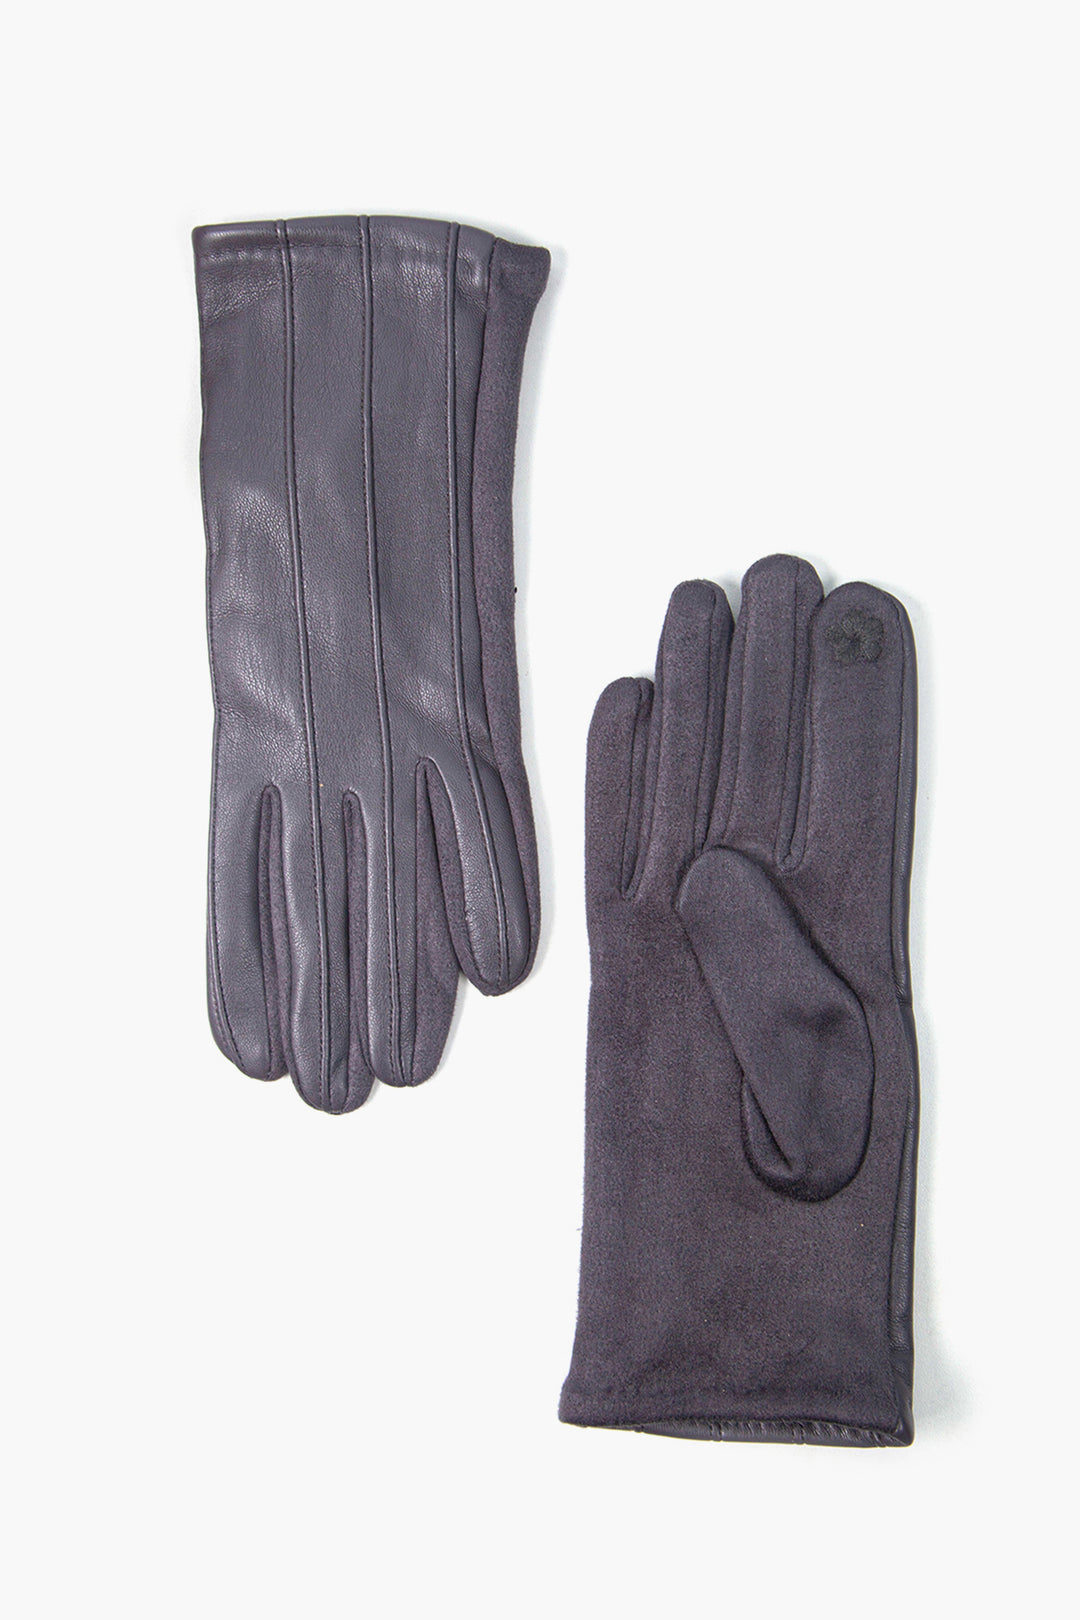 Dark Grey PU with Vertical Stitching Gloves